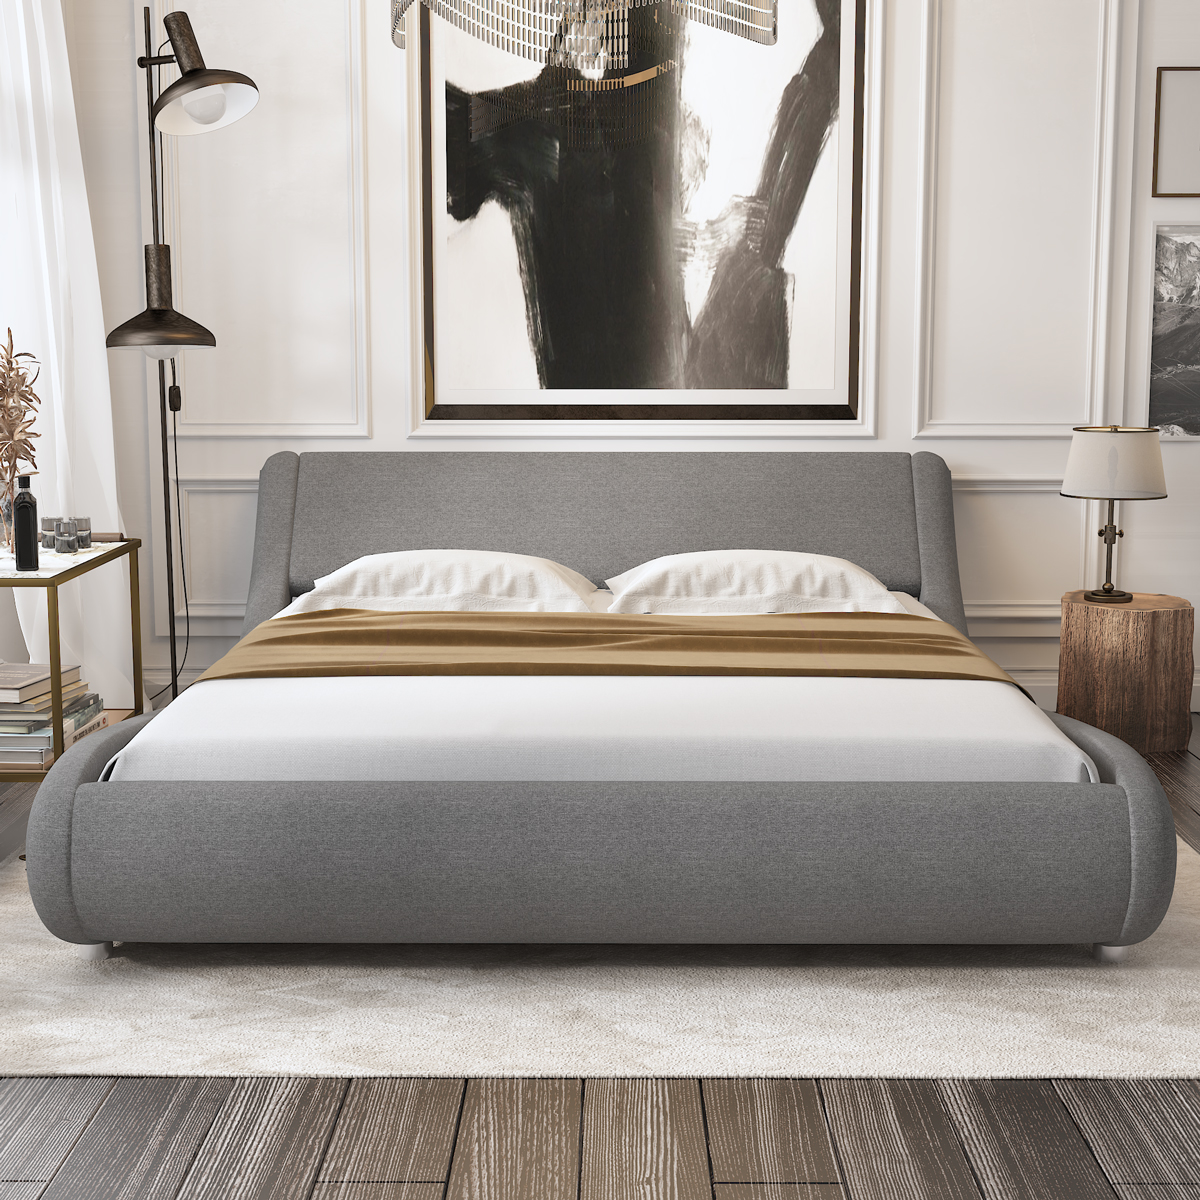 Amolife King Size Fabric Upholstered Platform Bed Frame Curved